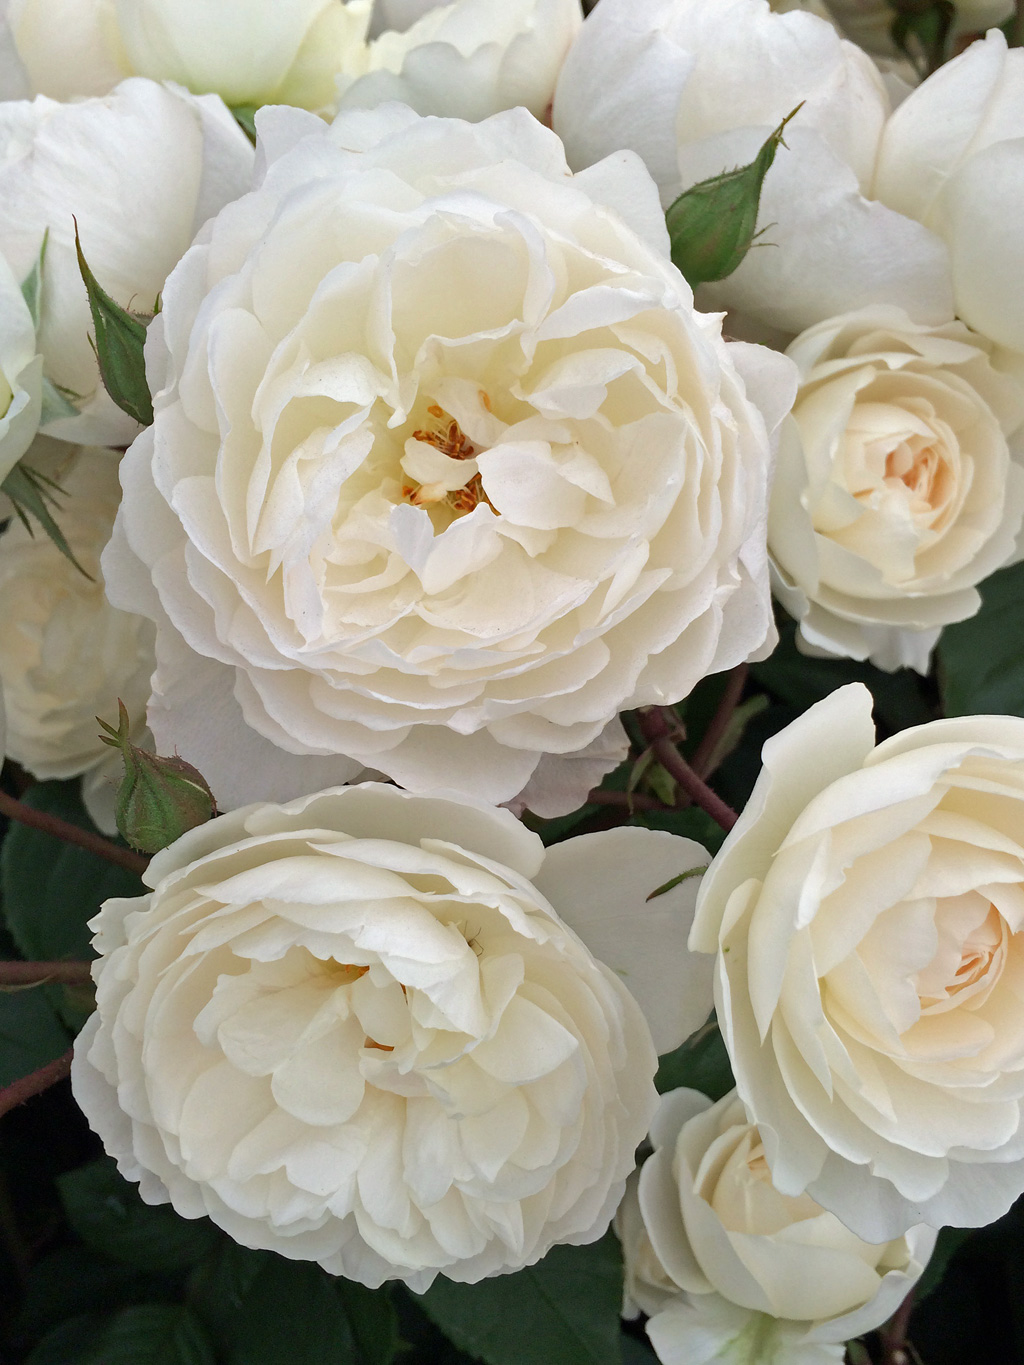 Những hình ảnh hoa hồng trắng đẹp nhất